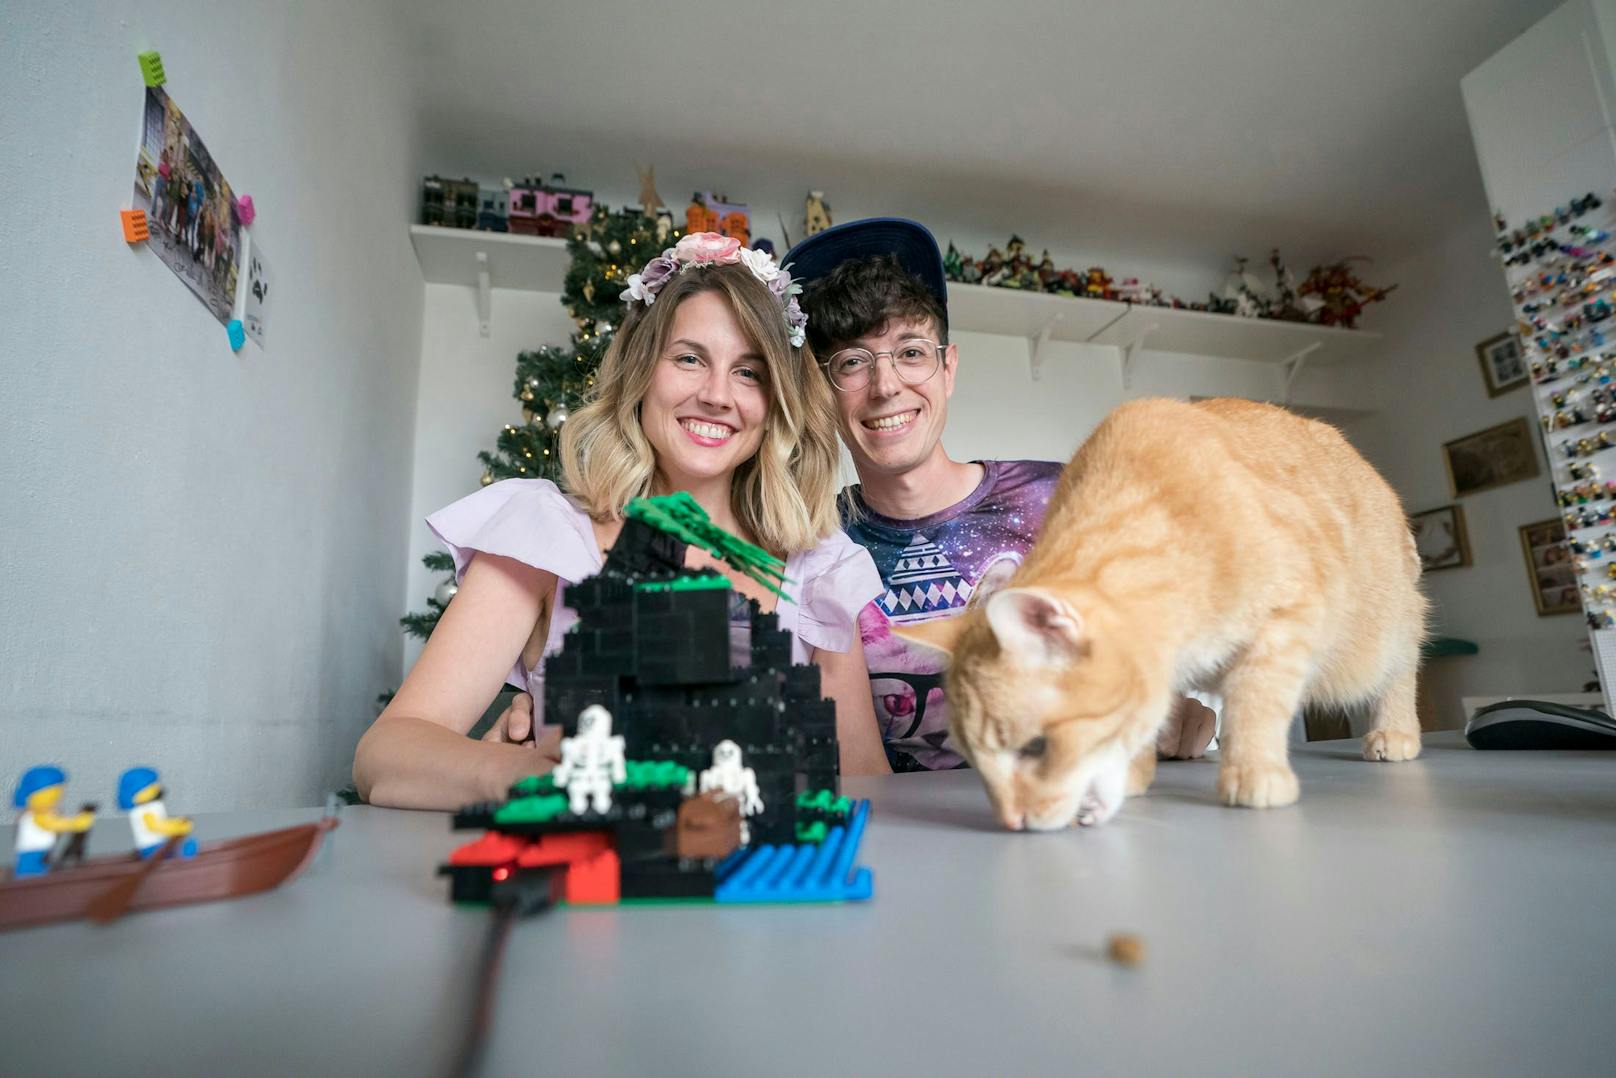 Seit dem Vorjahr bieten sie einen Livestream an, der sie beim Lego bauen zeigt. Immer mit dabei ist Kater Pumbaa (13).